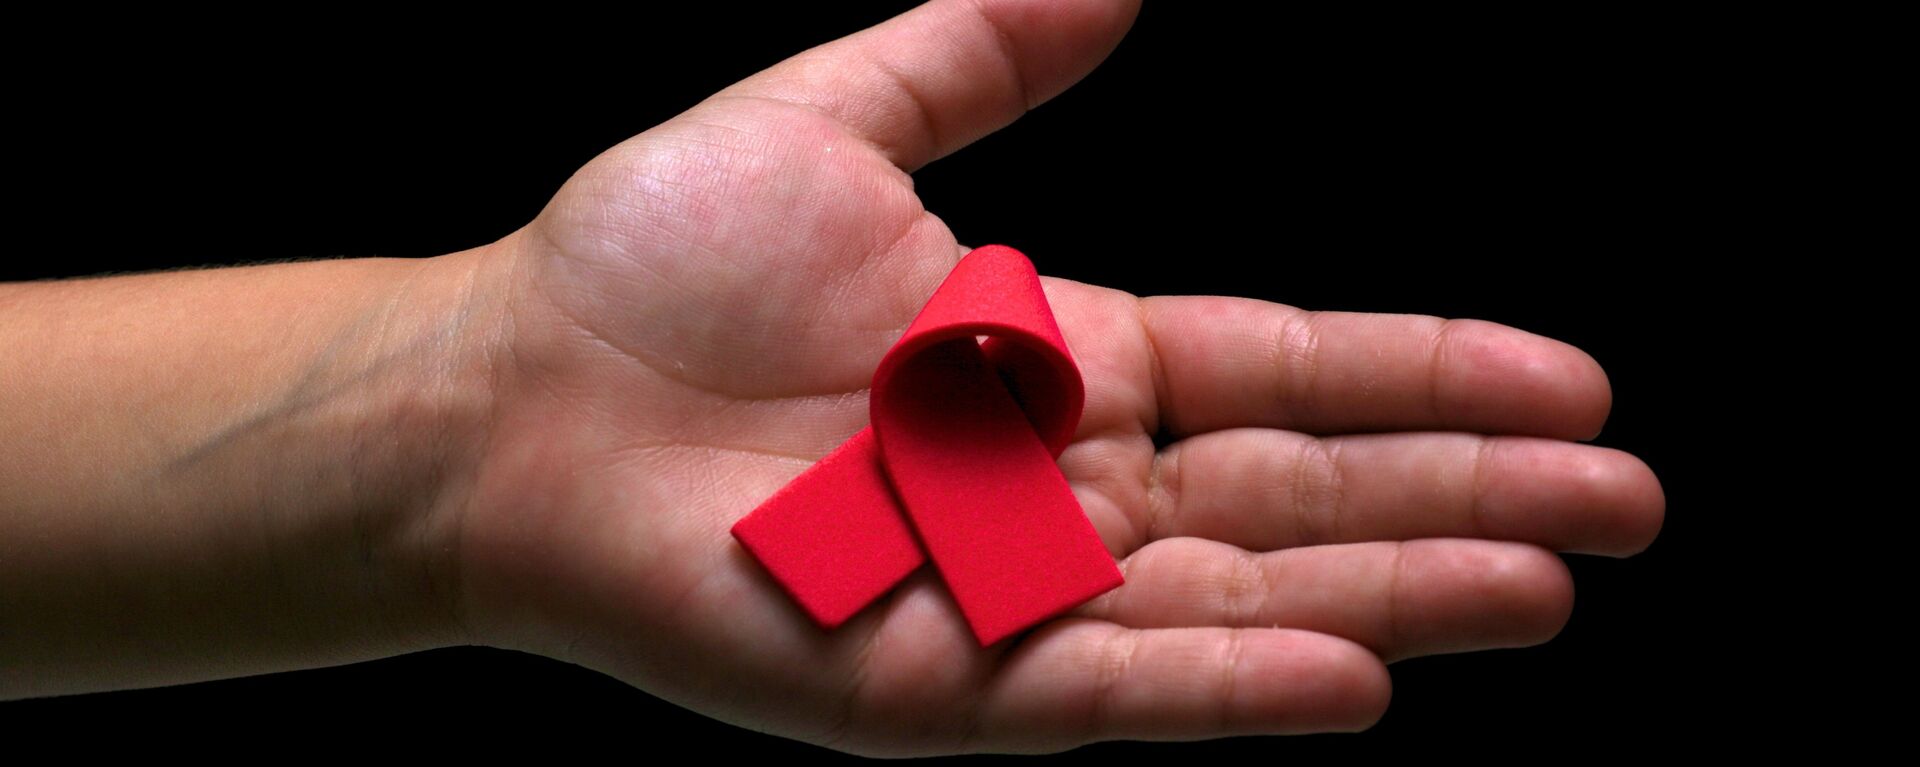 El lazo rojo, símbolo de la lucha contra el VIH y el SIDA  - Sputnik Mundo, 1920, 30.03.2021